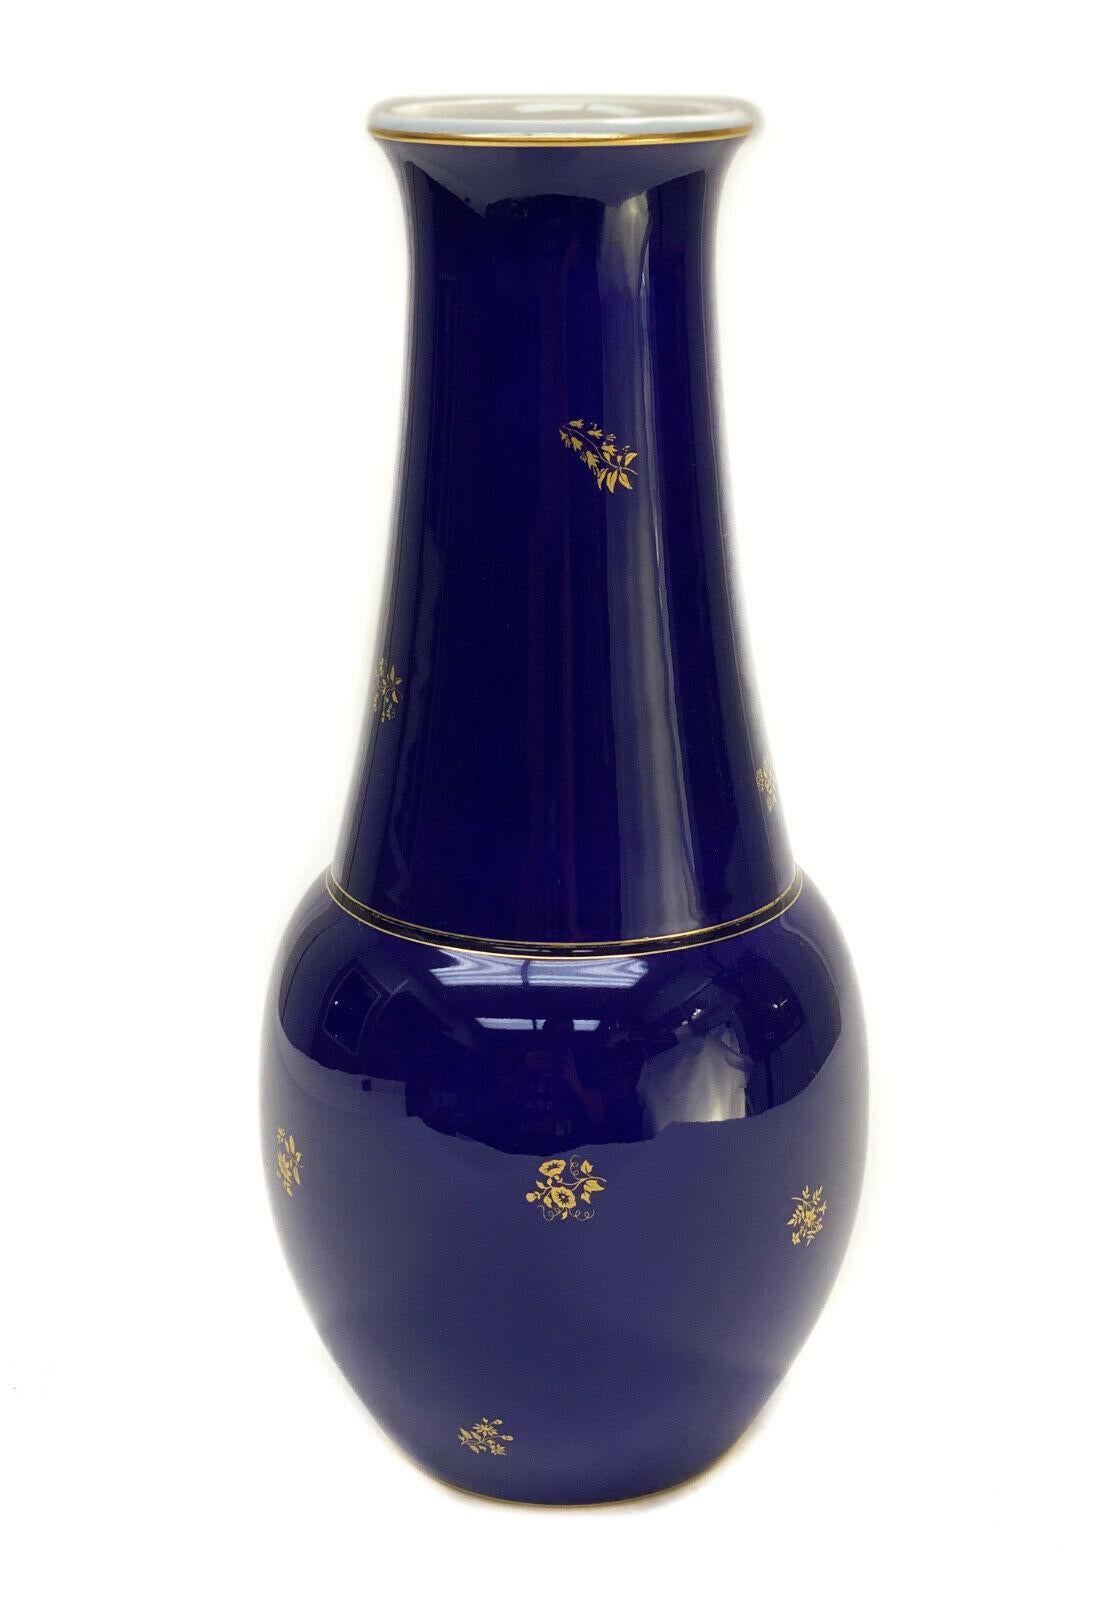 Manufacture de sevres Porzellan kobaltblau & vergoldet 12 Zoll Vase, 1926.

Kobaltblauer Grund mit durchgehend vergoldeten Blättern. Marke Manufacture de Sèvres auf der Unterseite, datiert auf 1925.

Zusätzliche Informationen:
Thema: Blumen